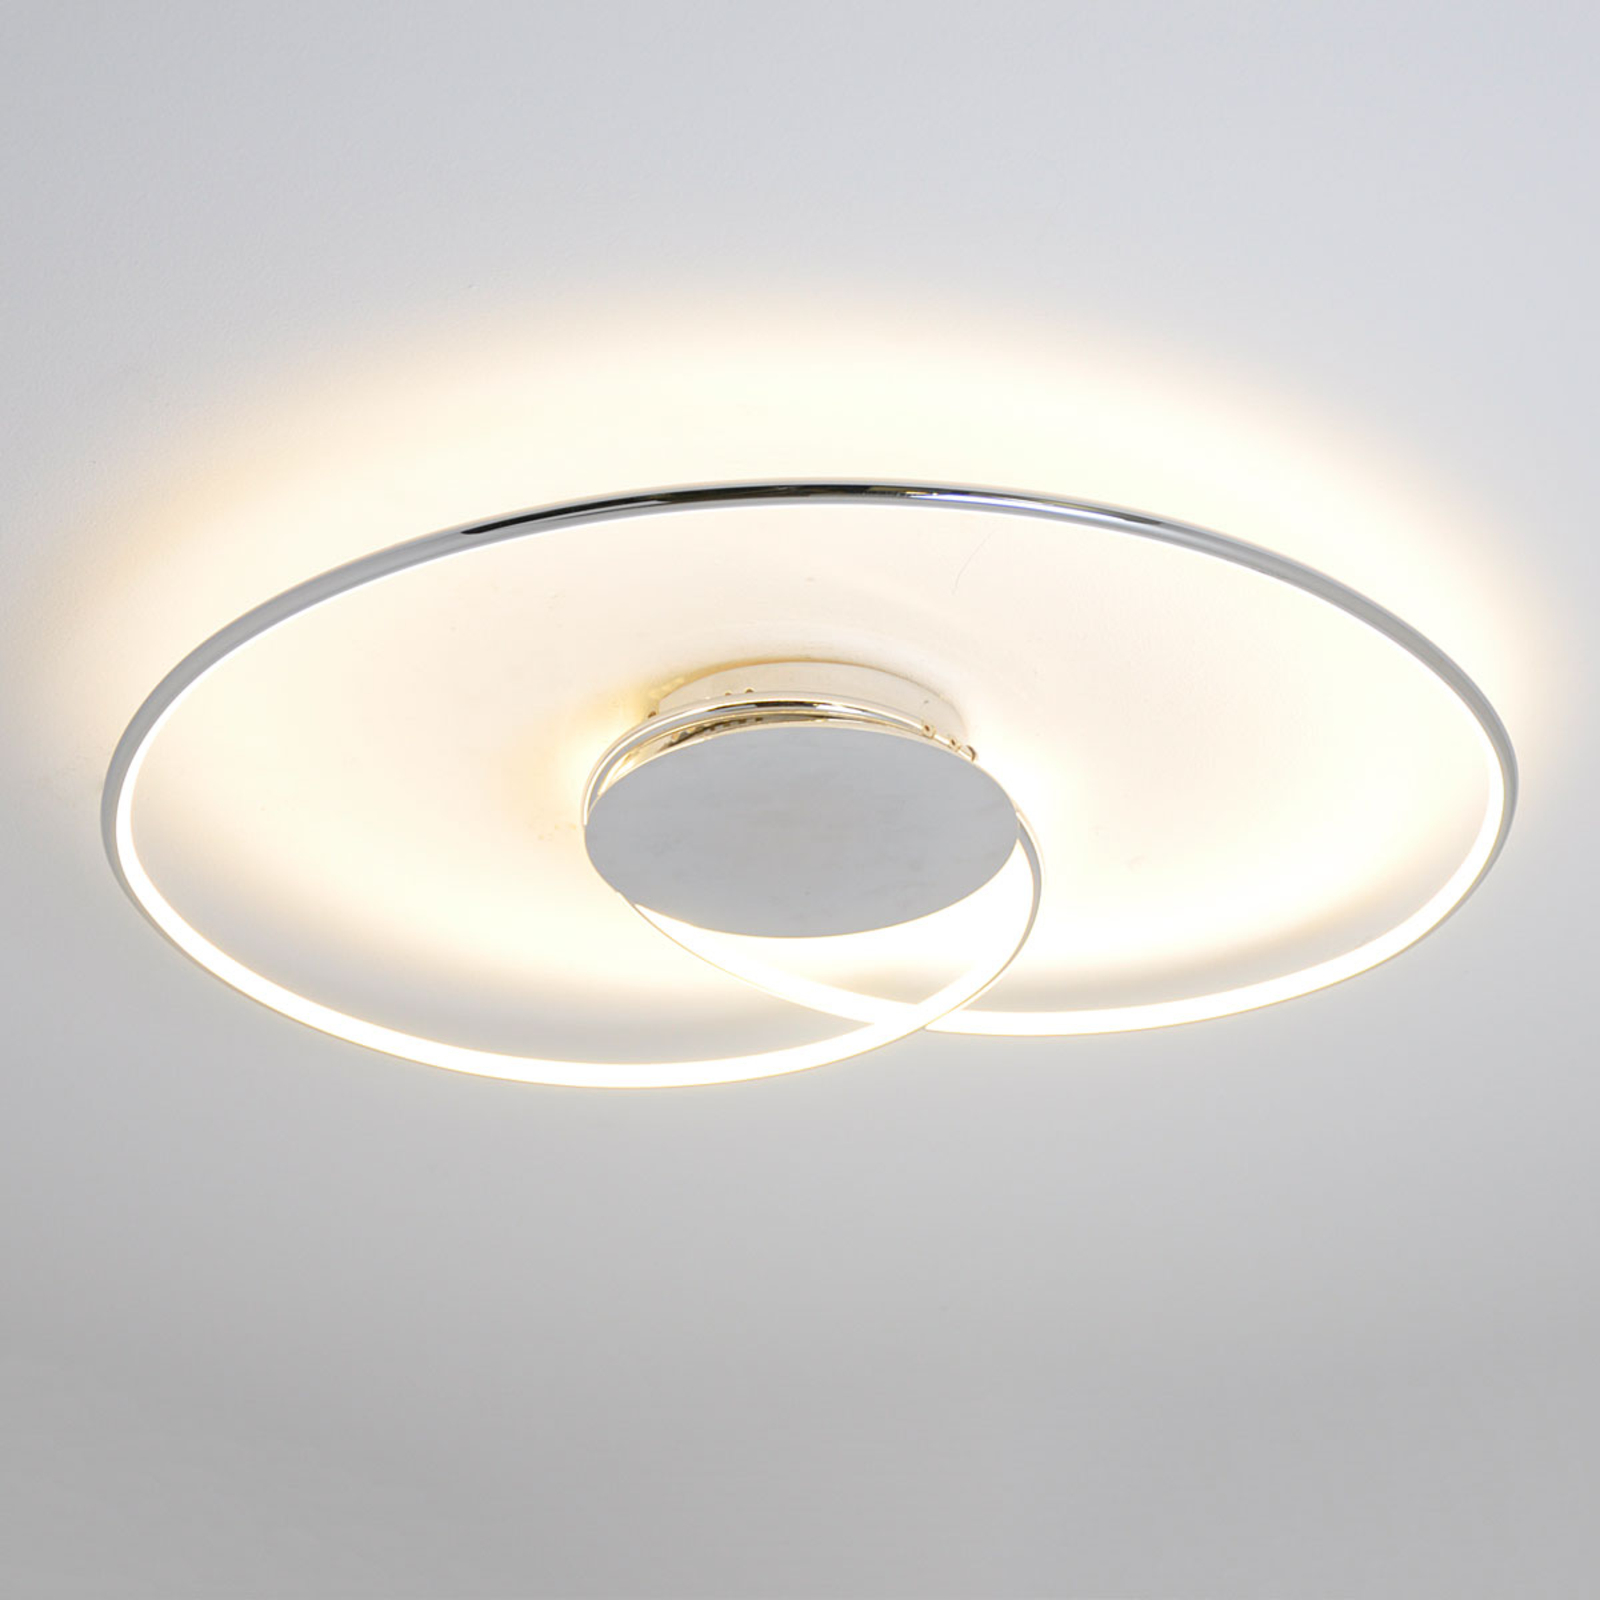 LED stropní svítidlo Joline, chrom, 74 cm